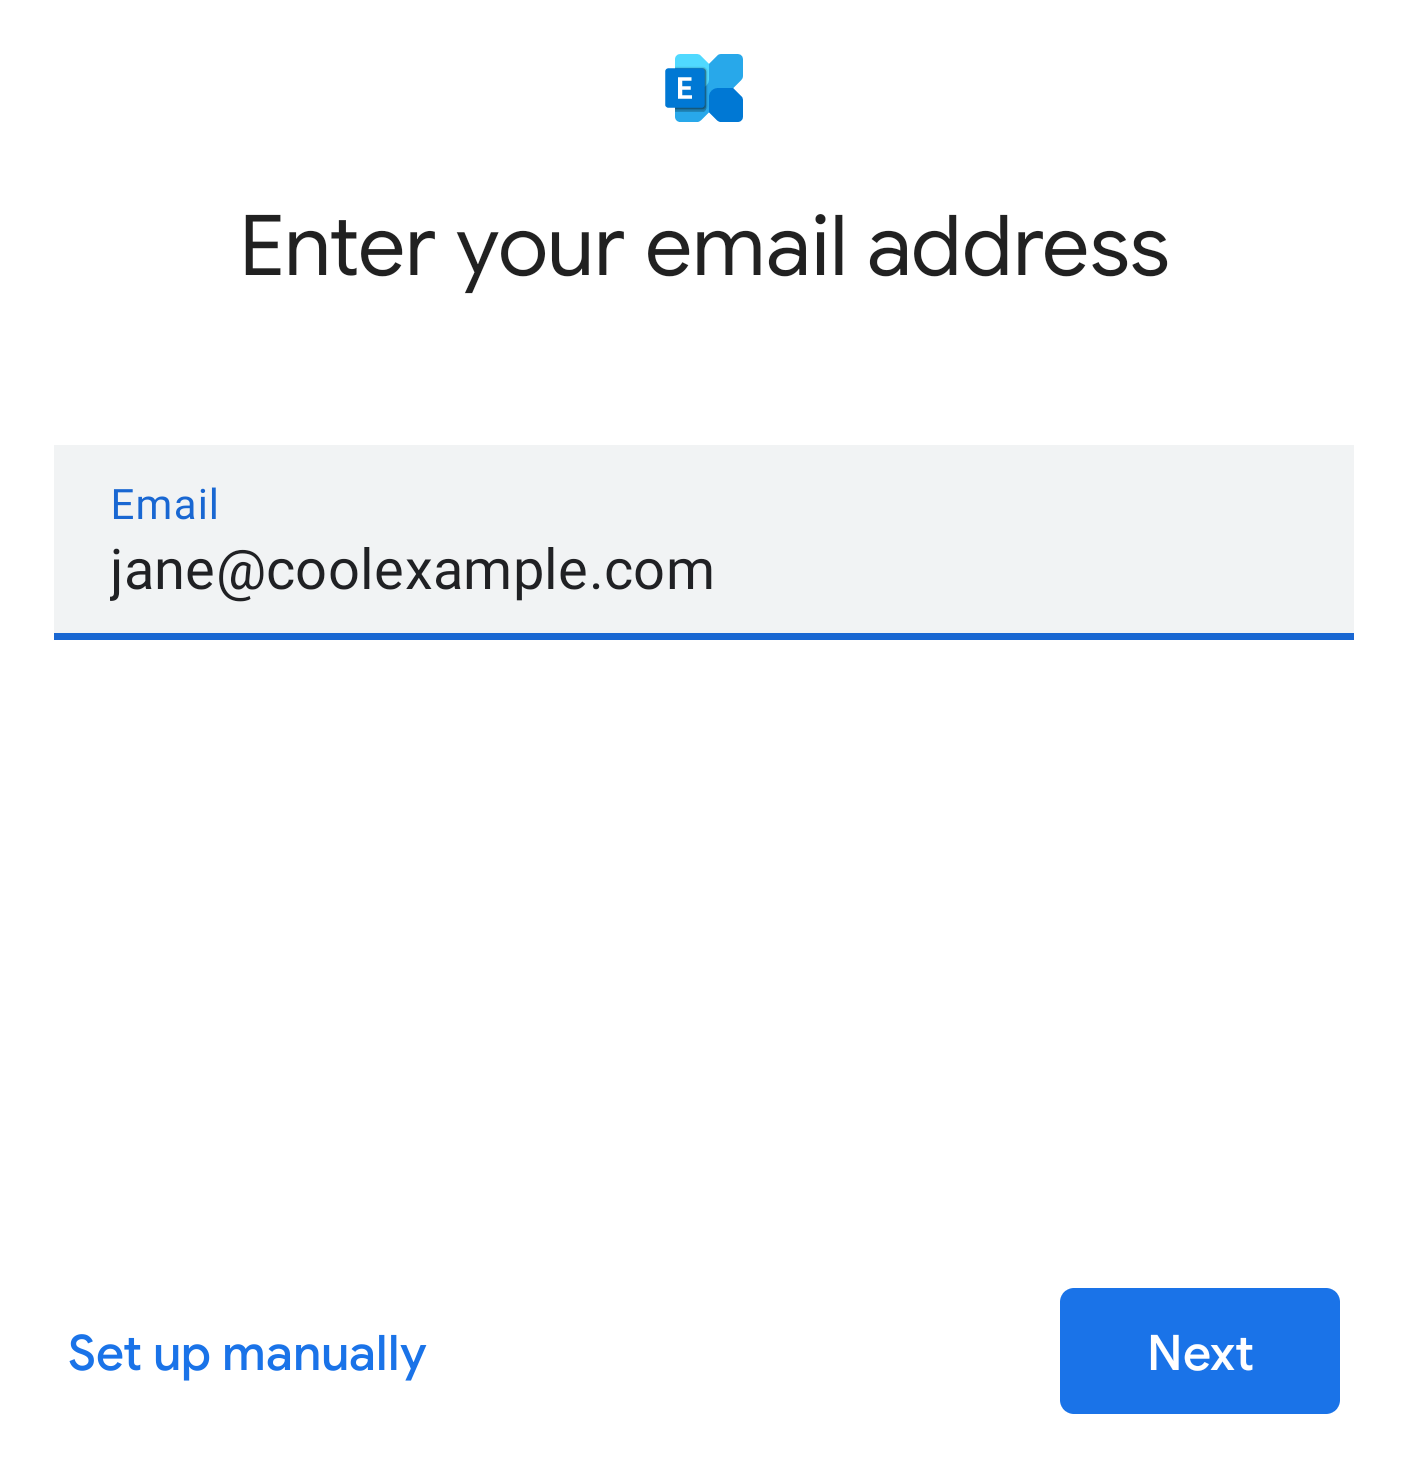 E-posta adresini girin